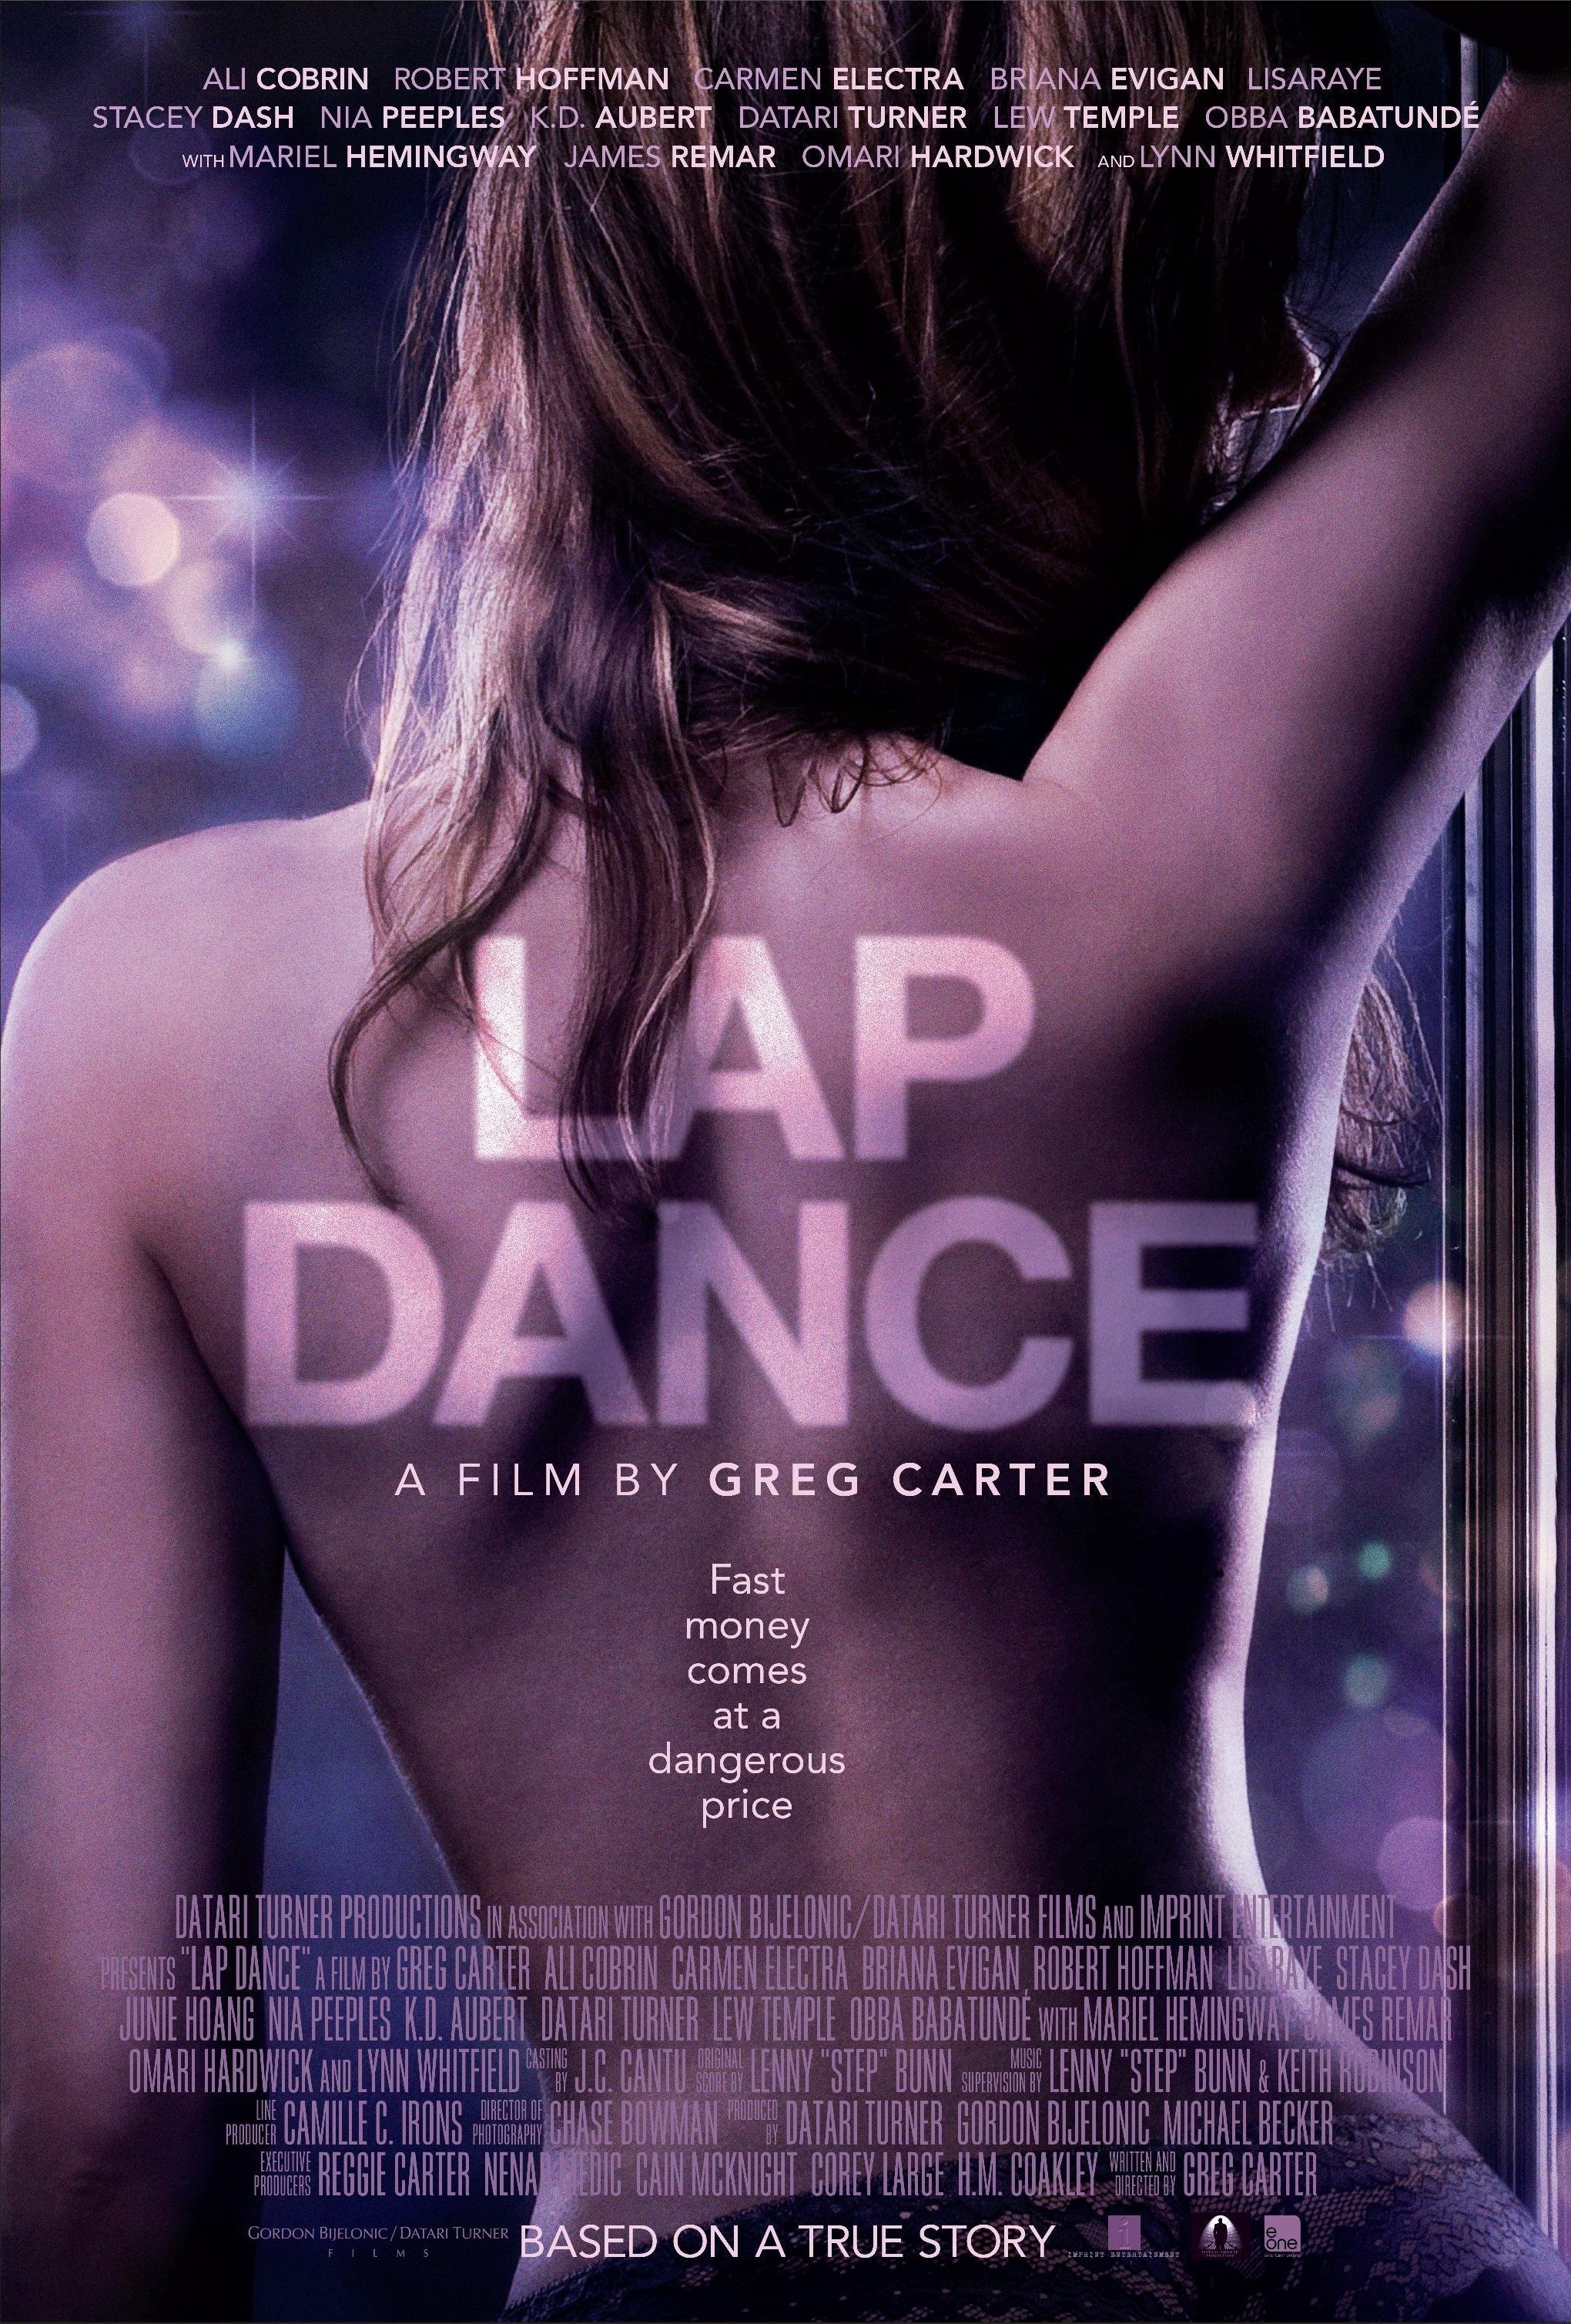 derrick crockett recommends Watch Lap Dance Online